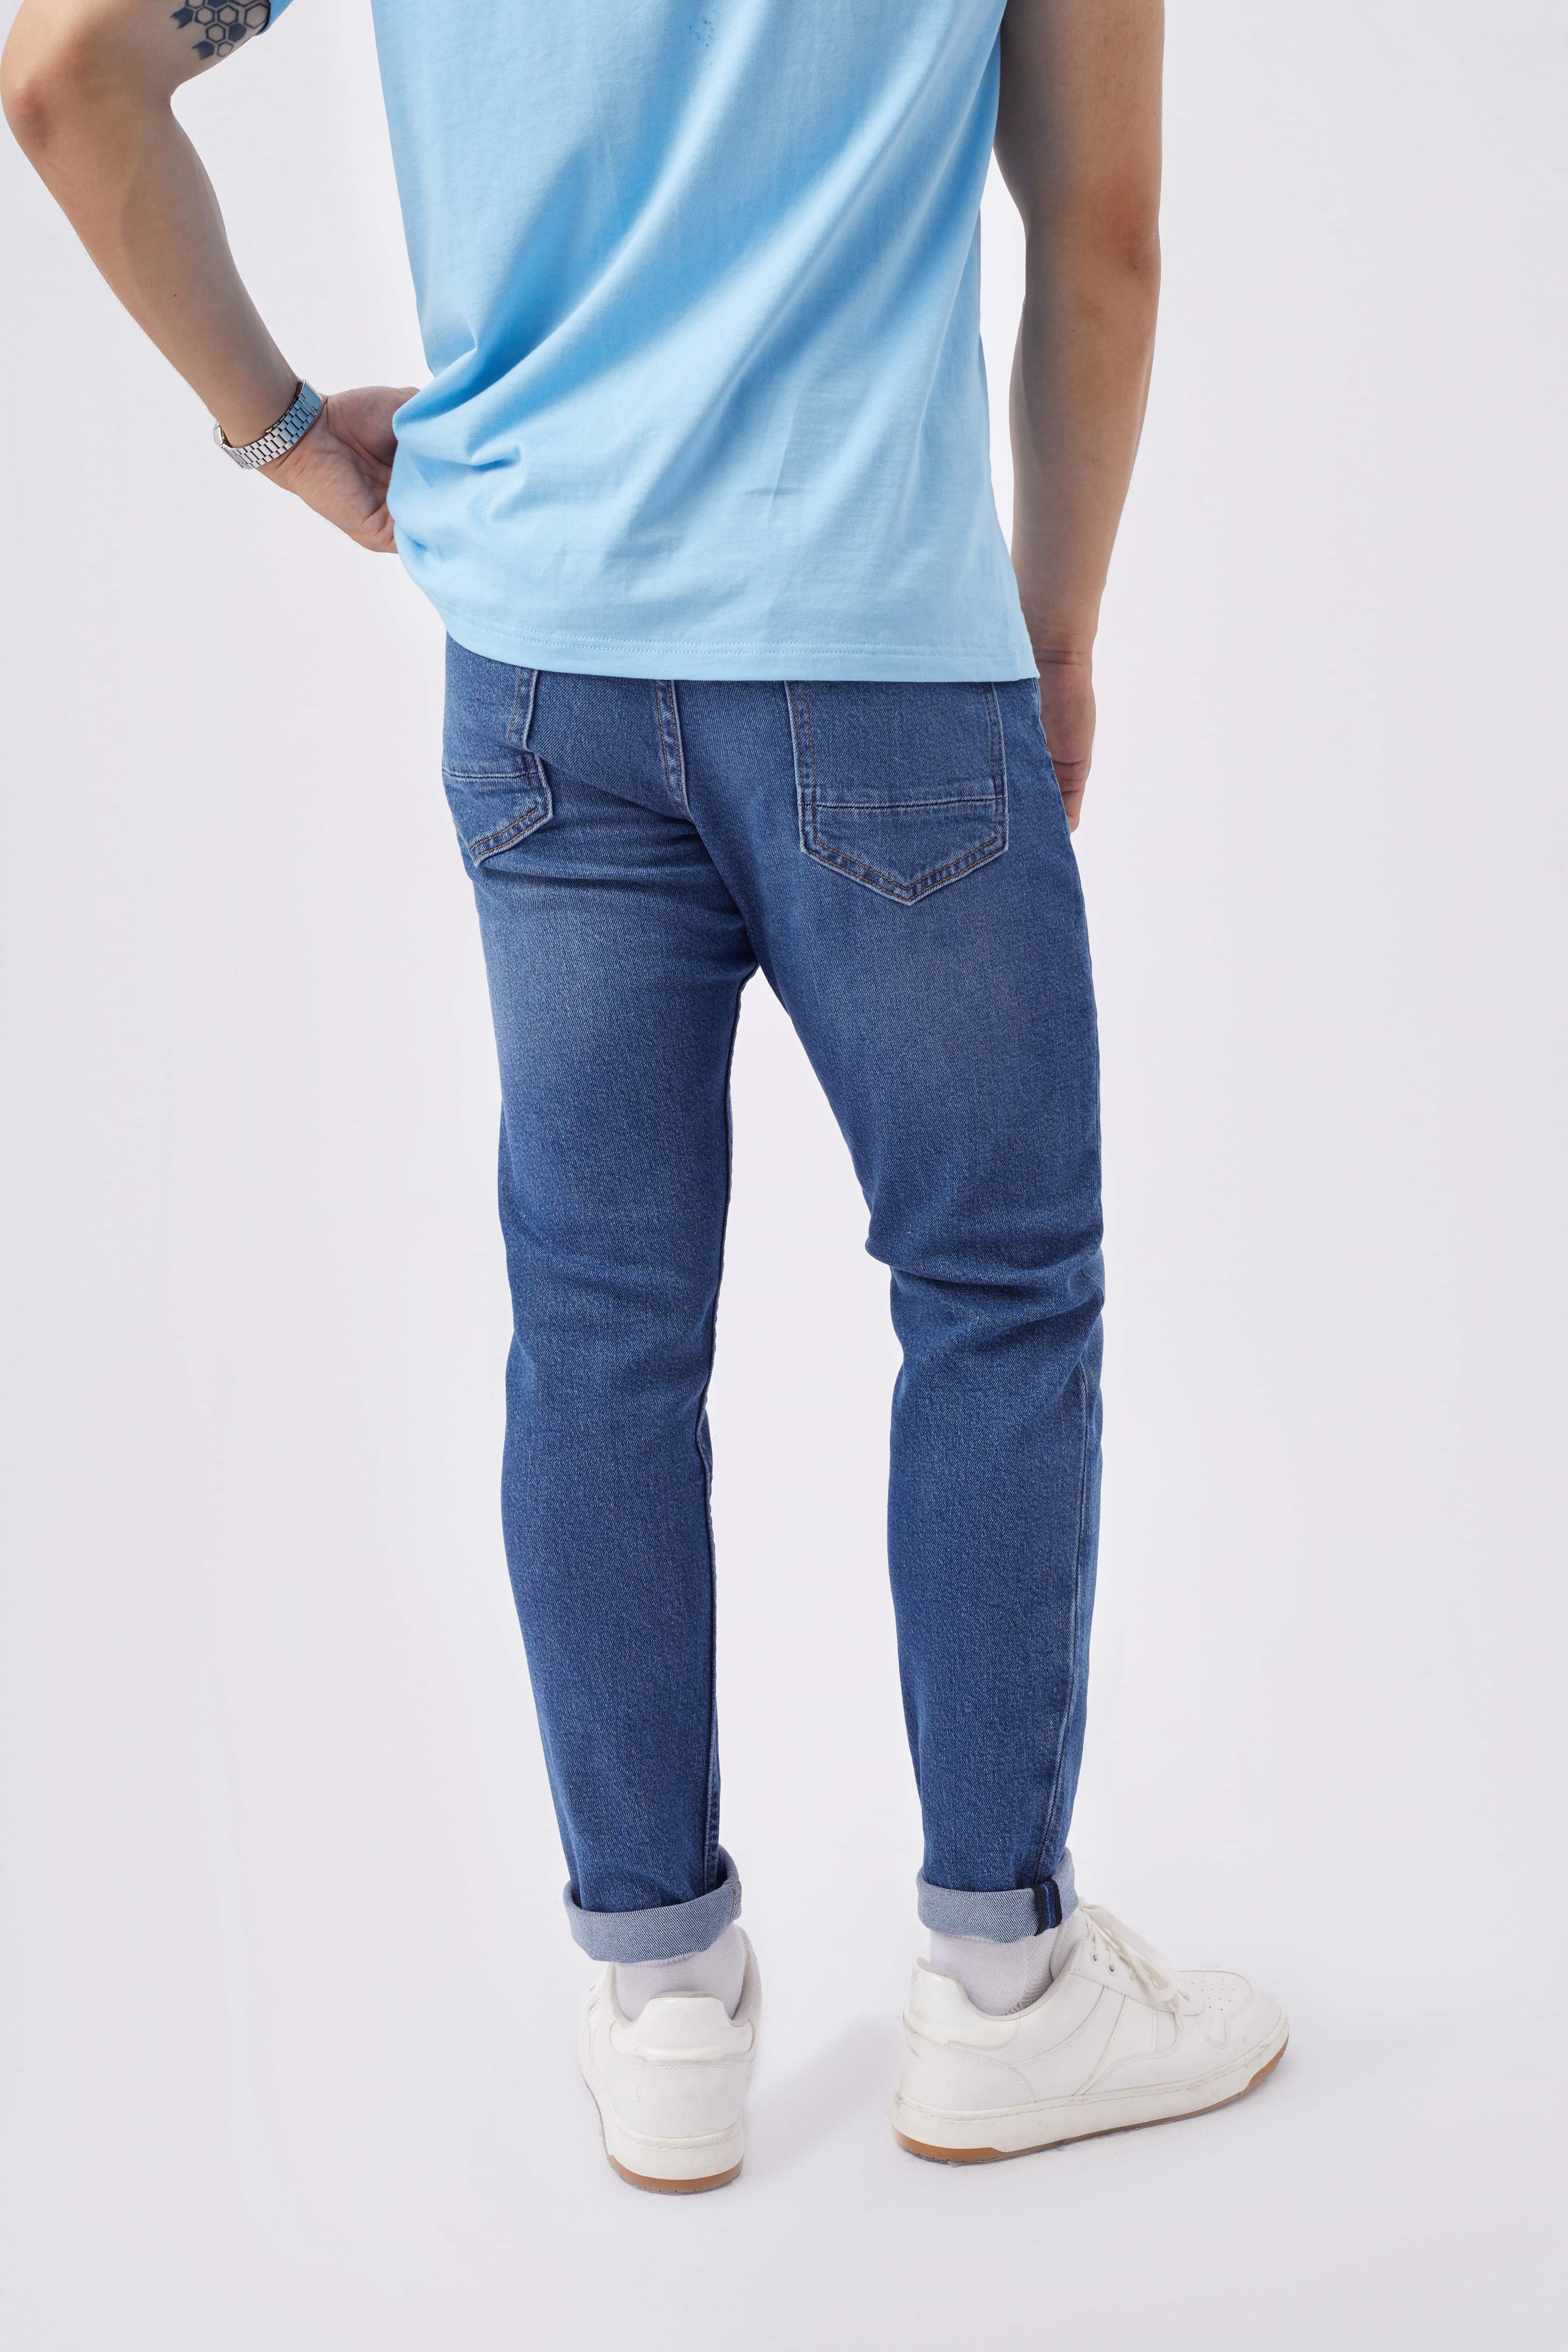 Quần jean nam xanh cao cấp MENFIT 0421 chất denim co giãn nhẹ 2 chiều, chuẩn form, thời trang